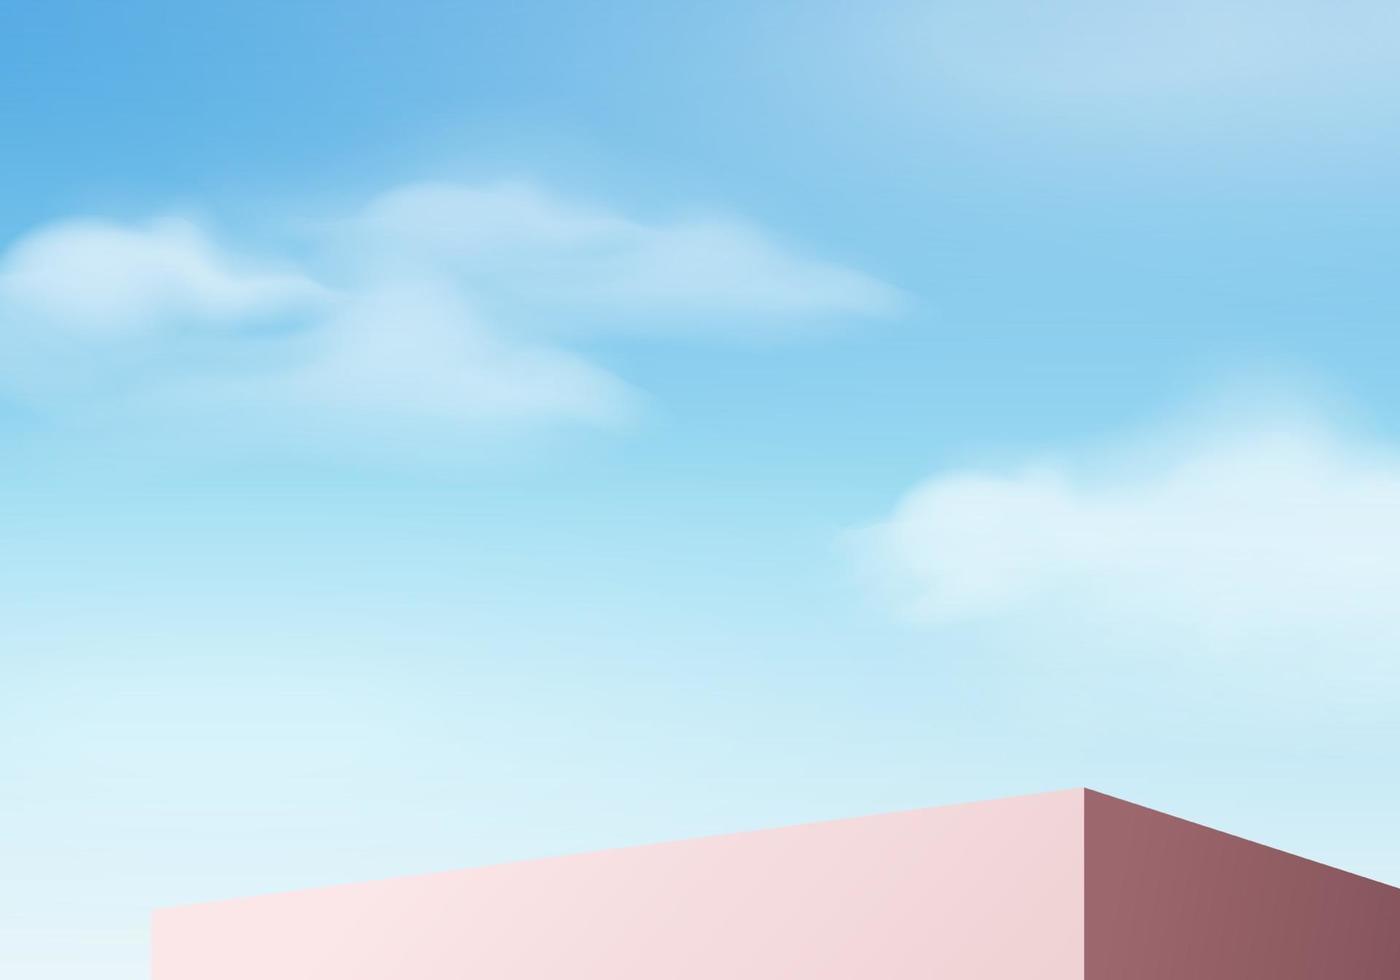 bakgrundsvektor 3d blå rendering med pall och minimal moln scen, minimal produkt display bakgrund 3d återges geometrisk form himmel moln blå pastell. etapp 3d framför produkten i plattform vektor